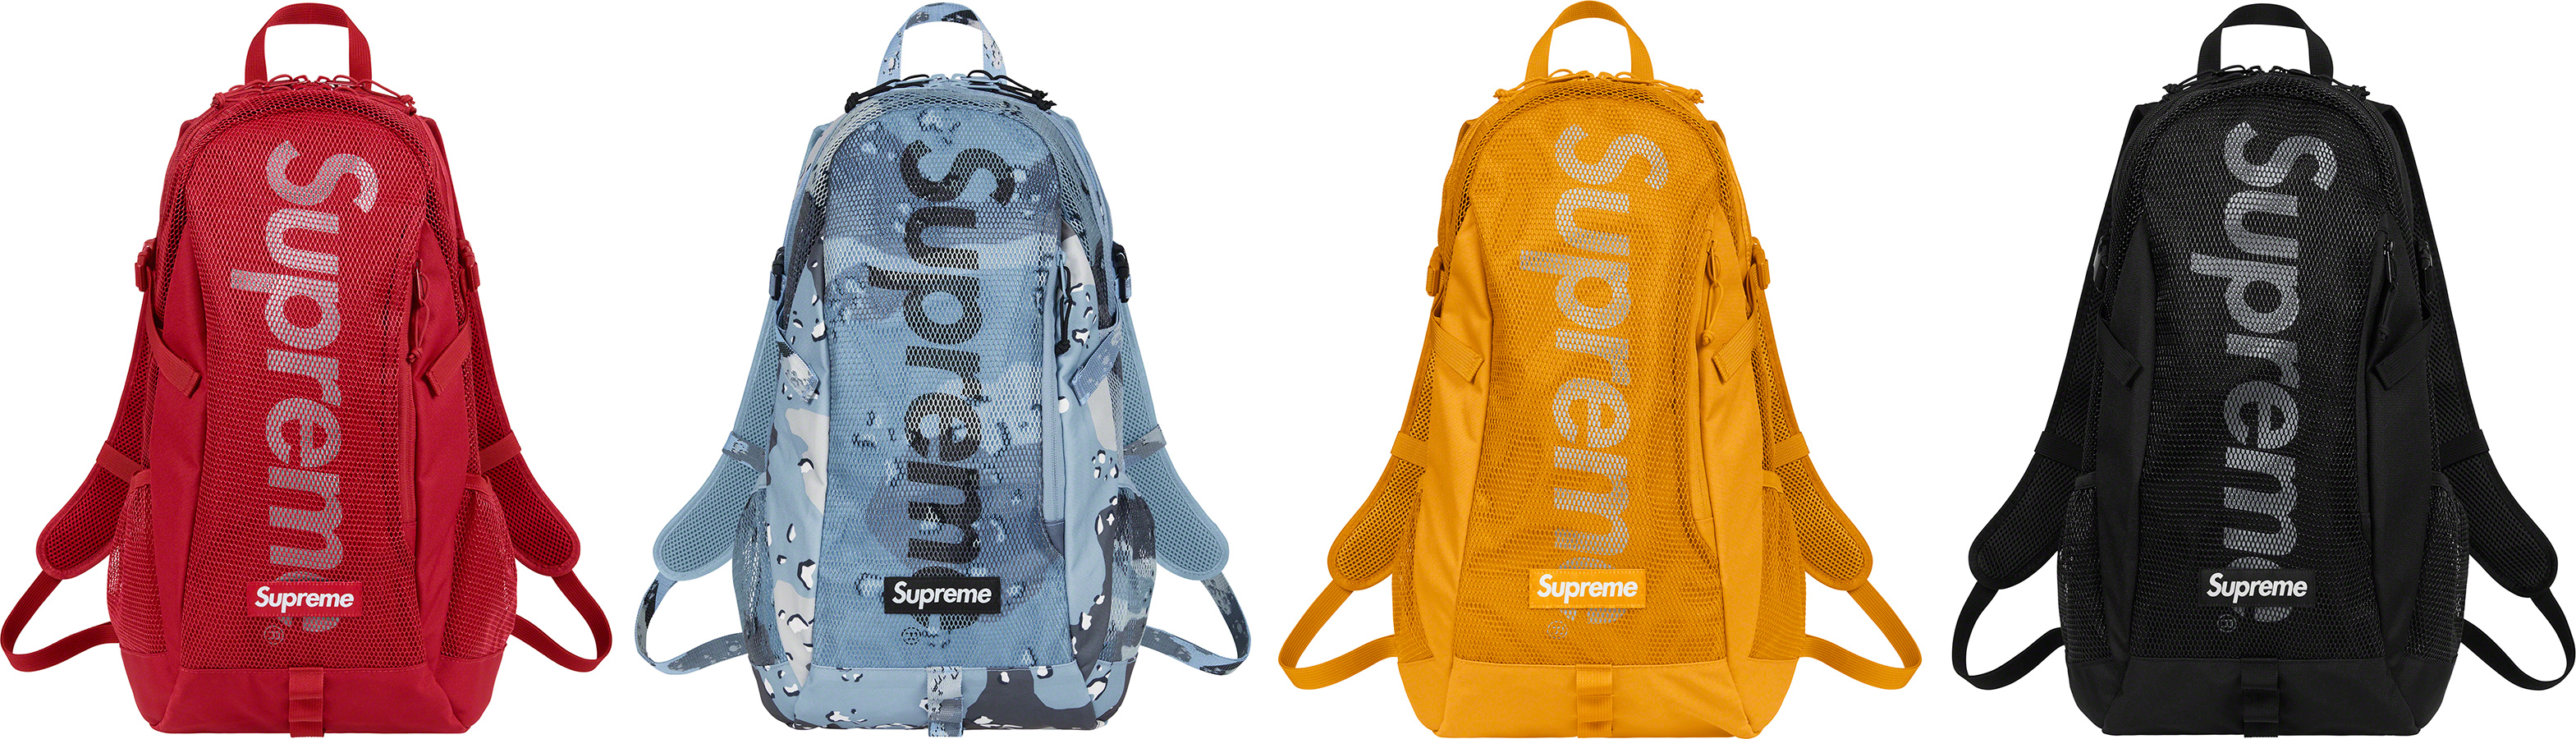 Backpack - spring summer 2020 - Supreme